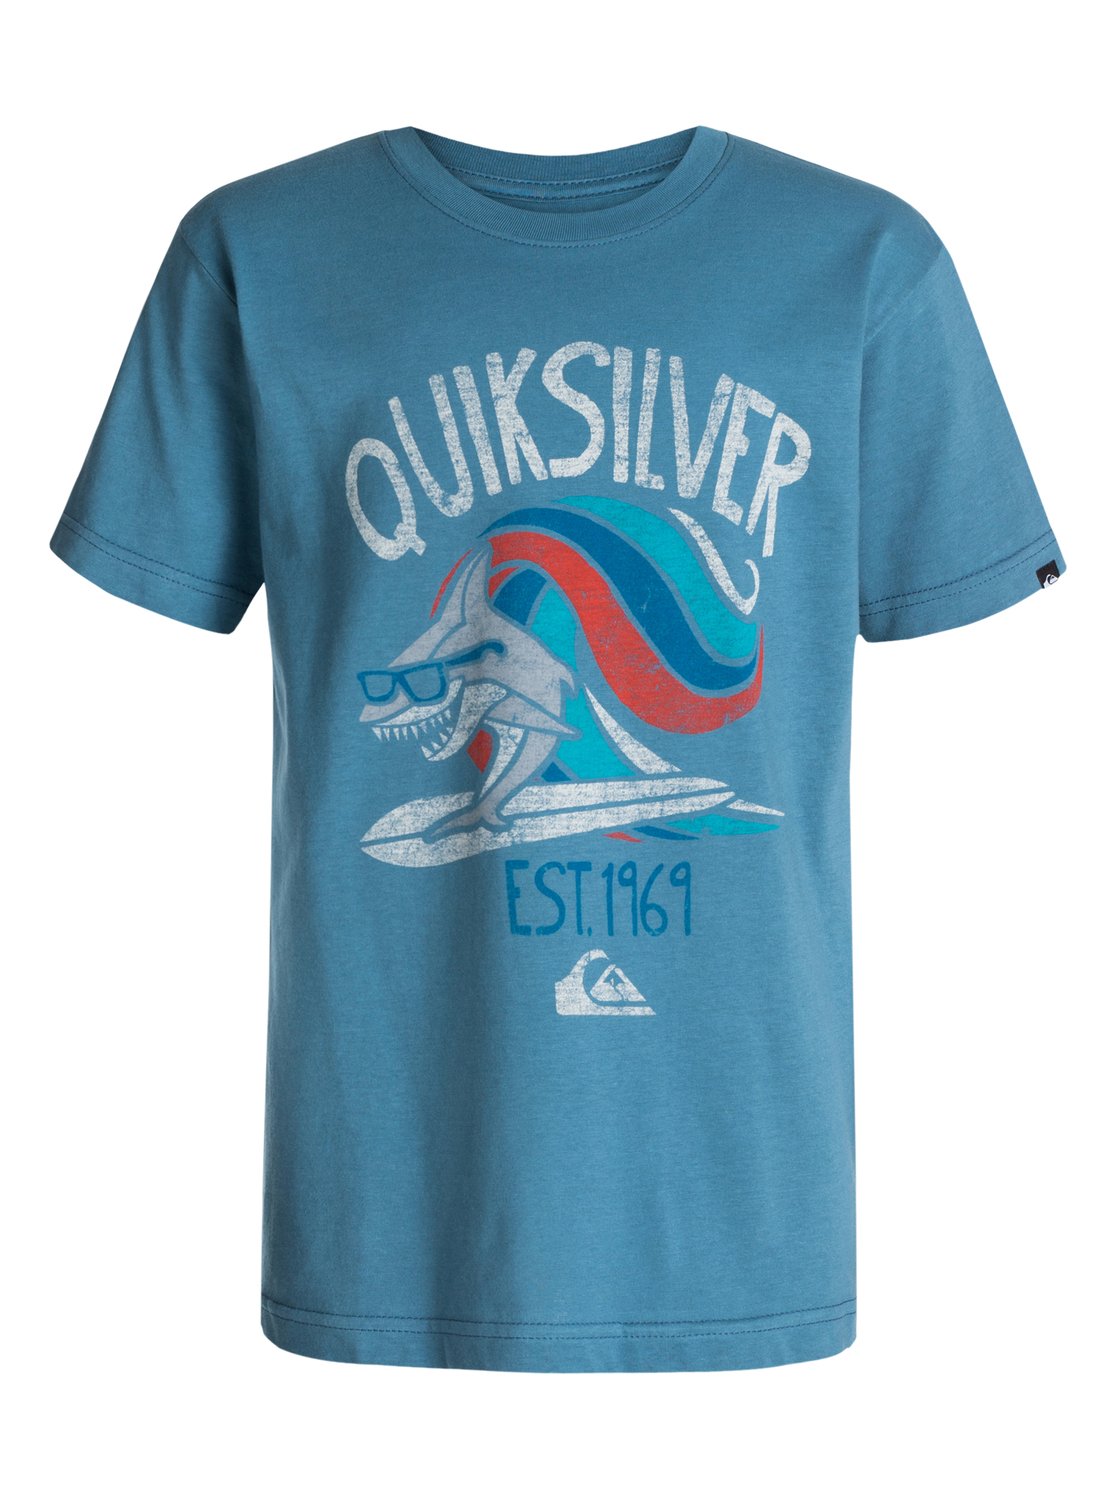 Boys 8-16 Sharksurf T-Shirt 40464133 | Quiksilver